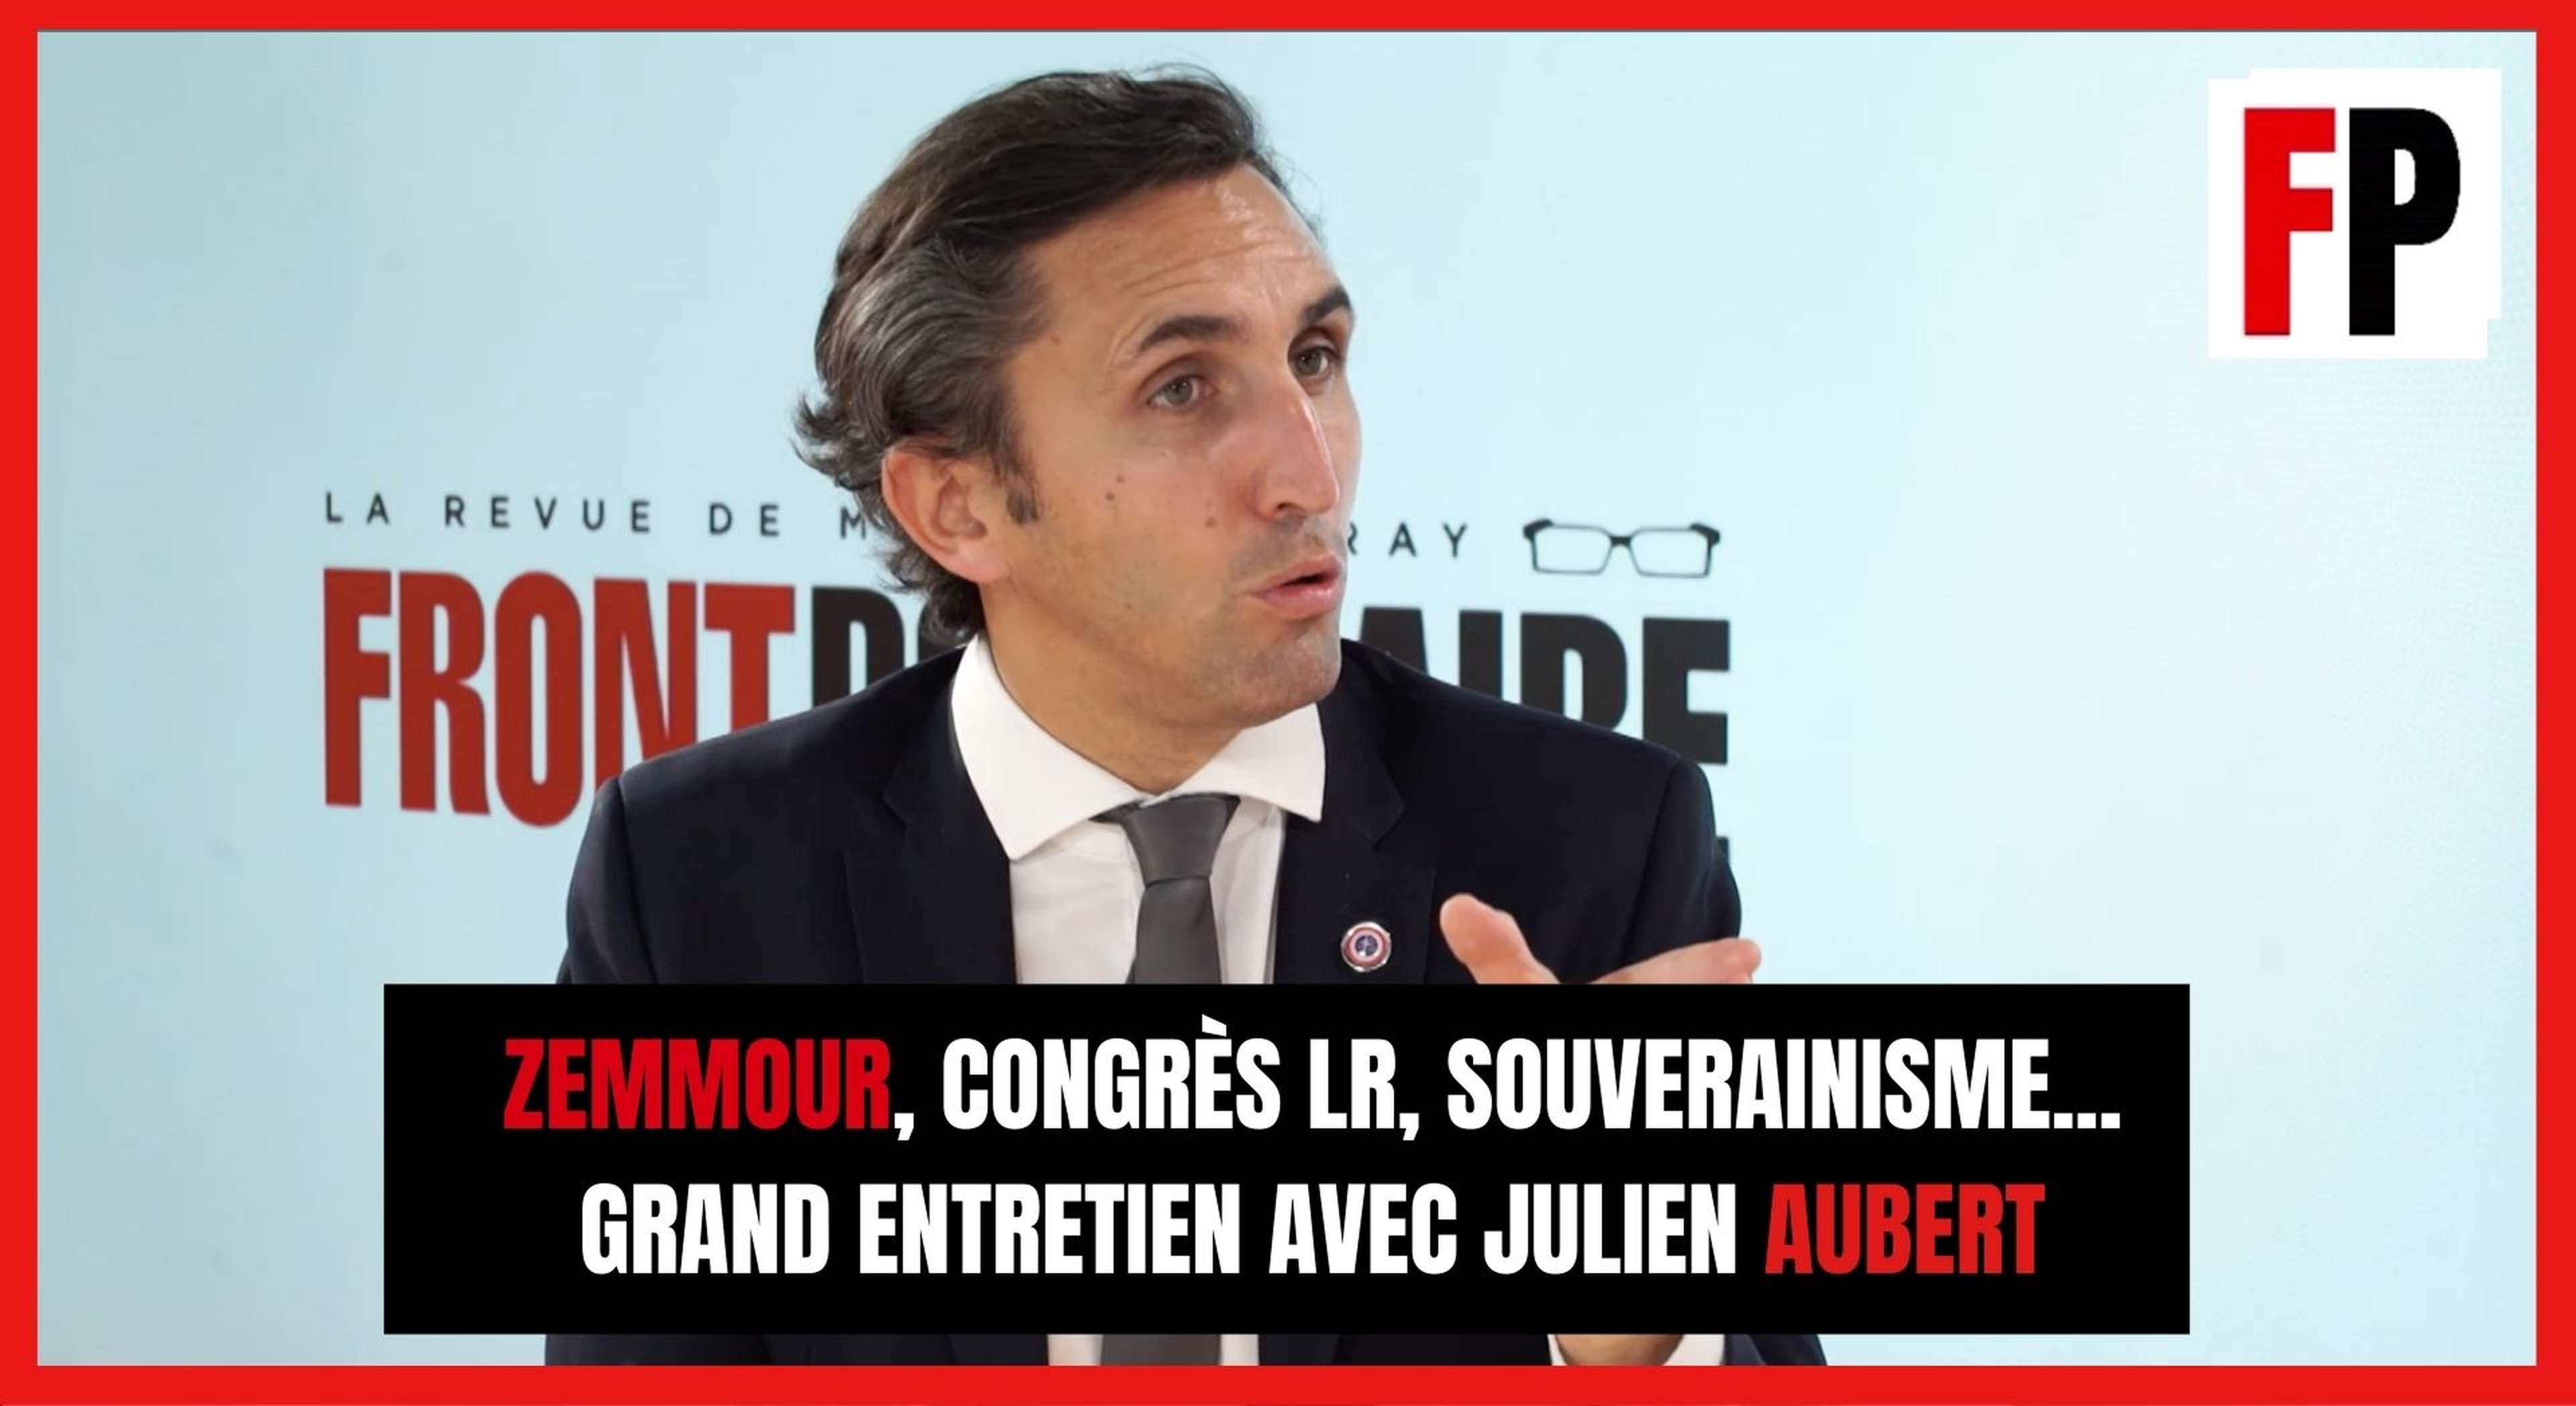 Zemmour, congrès LR, souverainisme... Grand entretien avec Julien Aubert